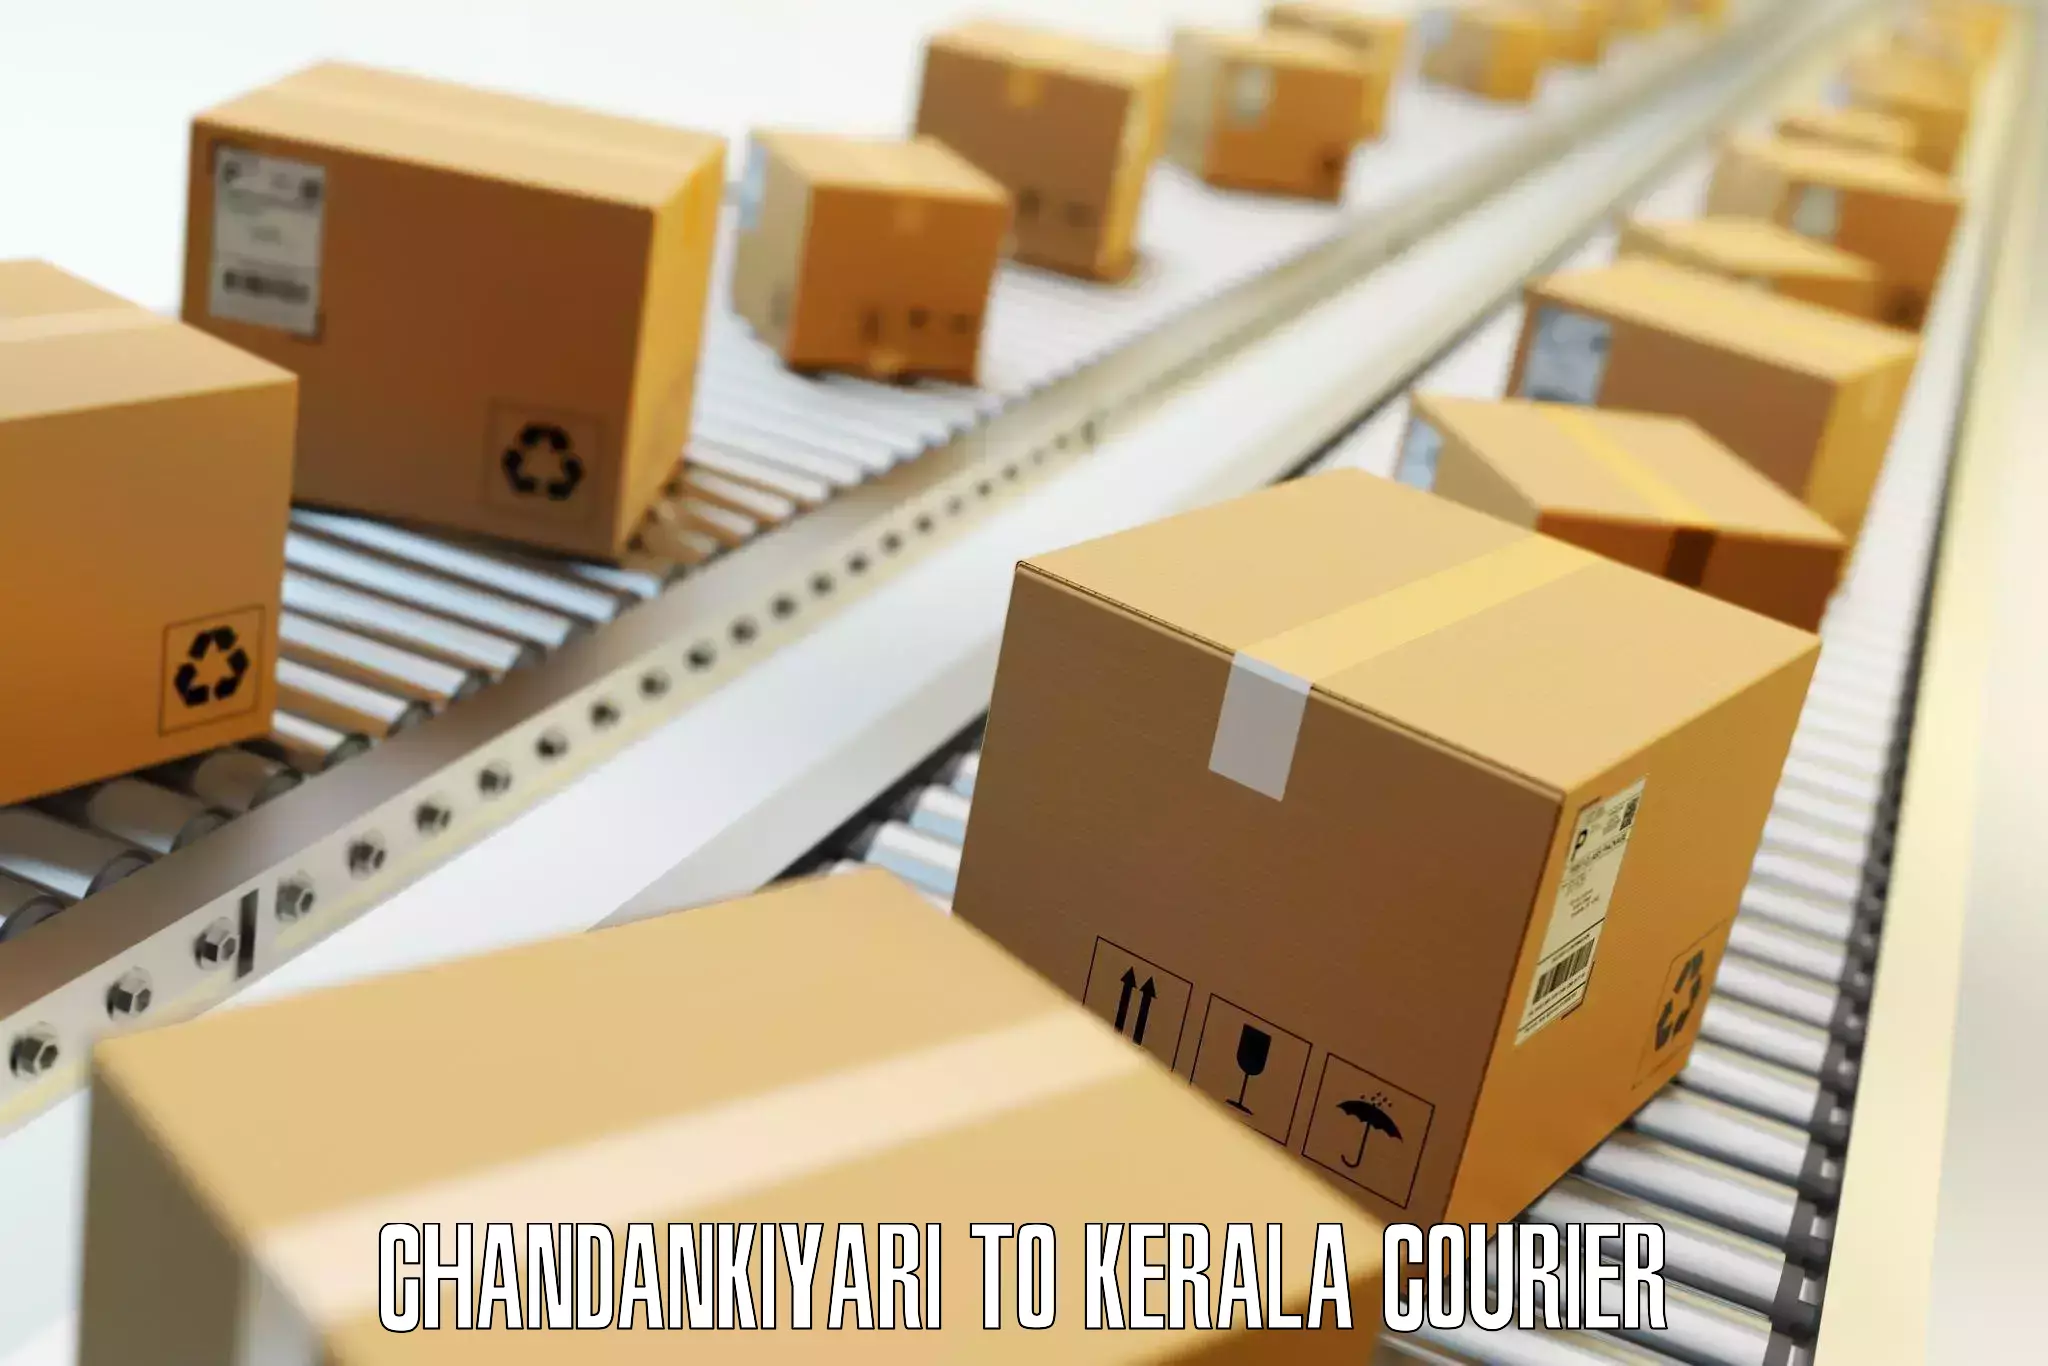 International baggage delivery Chandankiyari to Koothattukulam